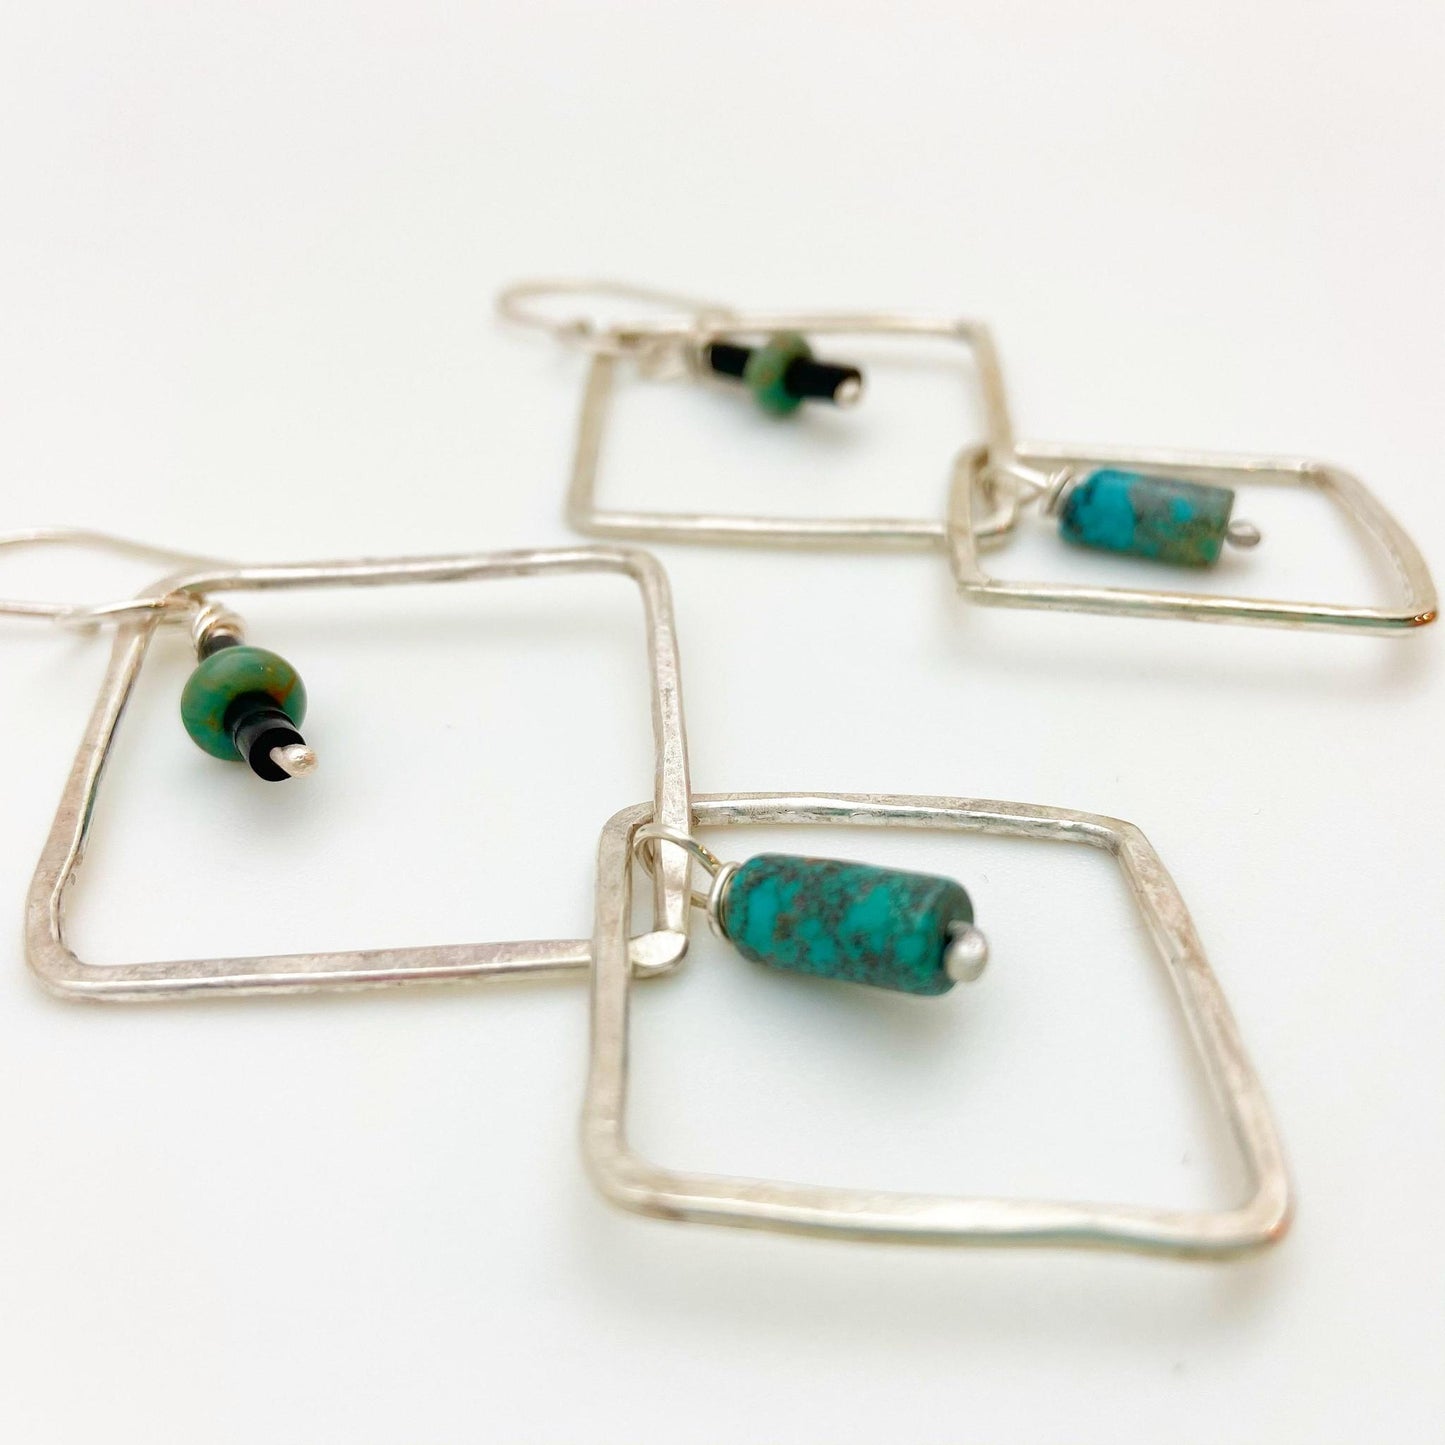 Sterling Earrings - Hoop Dangles with Stones - Handmade